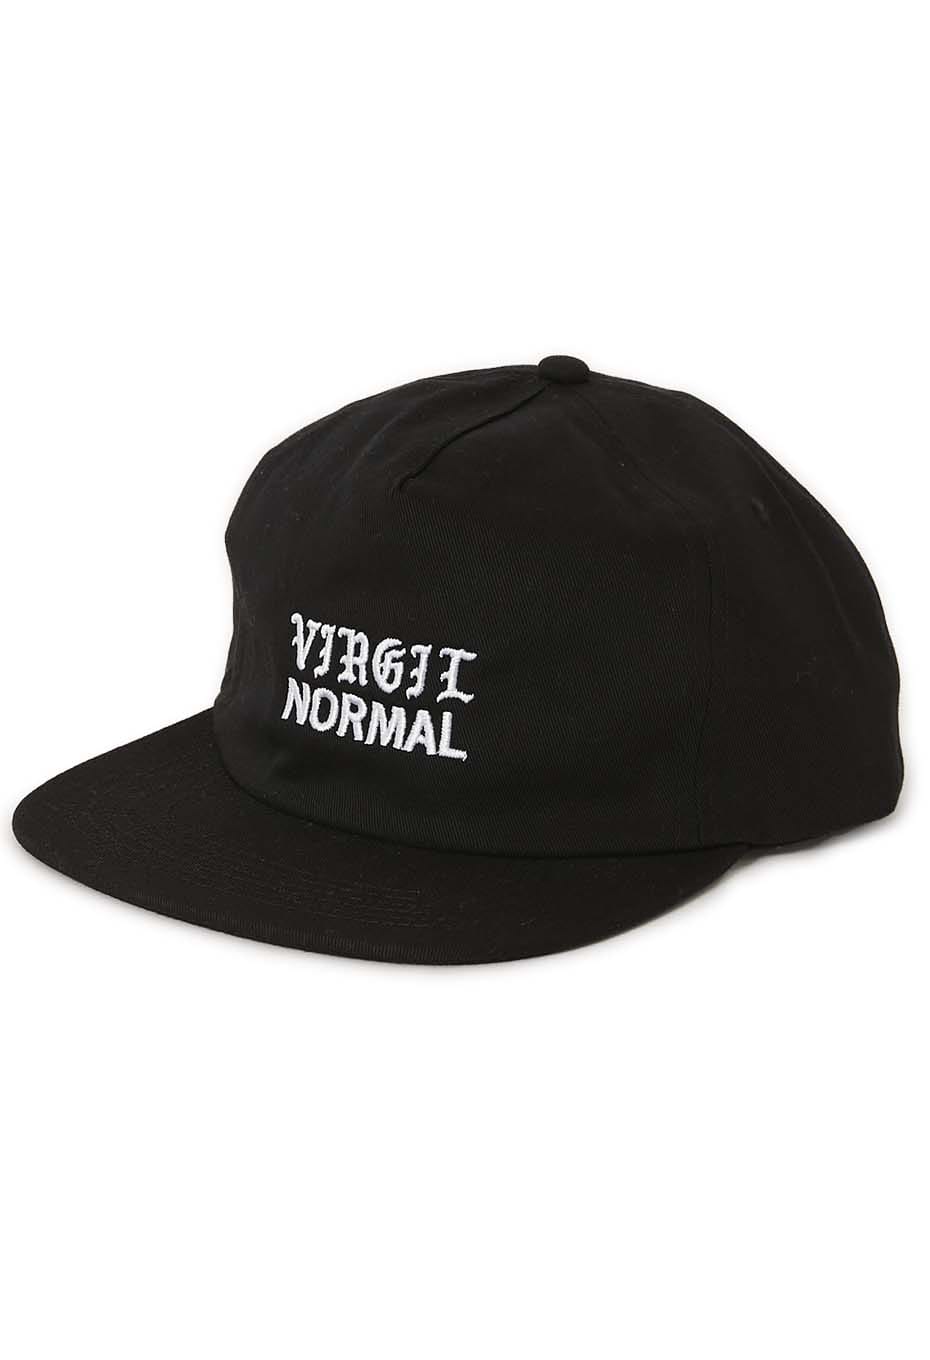 VIRGIL NORMAL shop hat